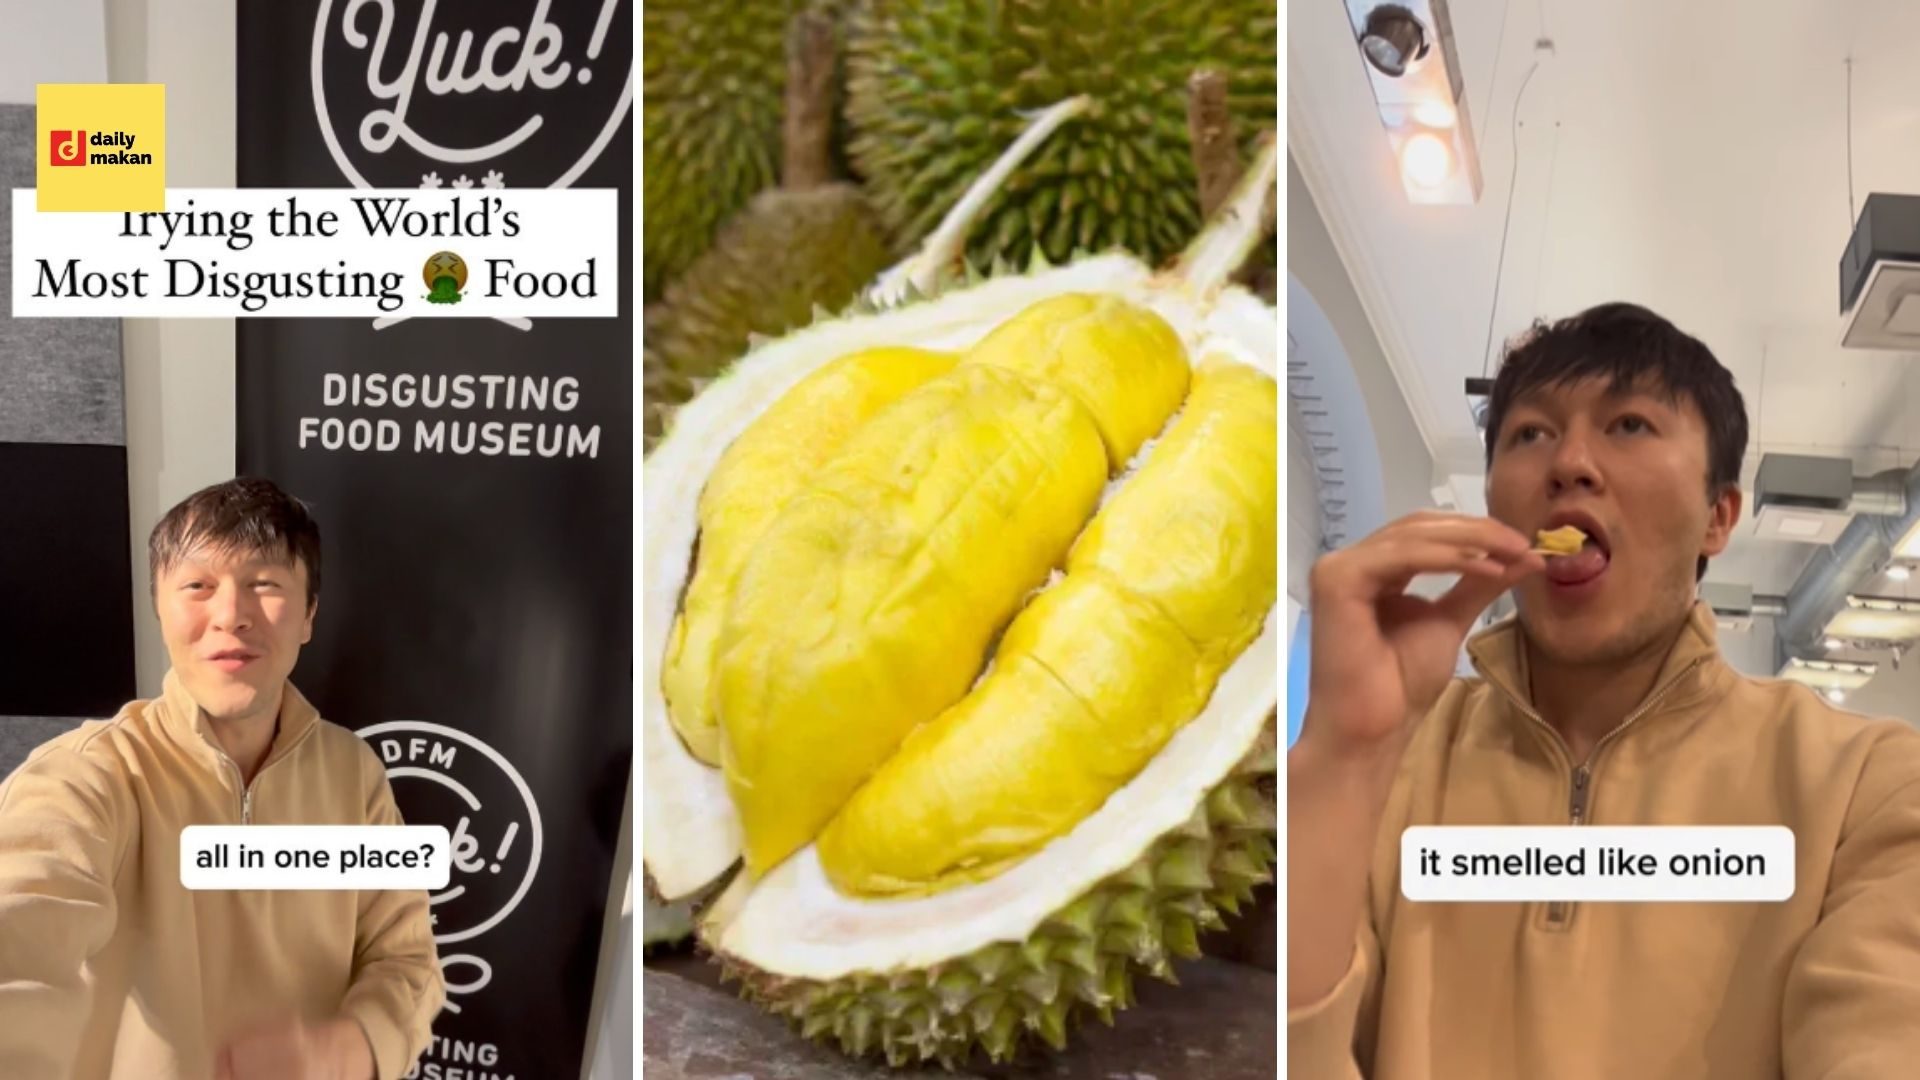 disgusting food museum durian